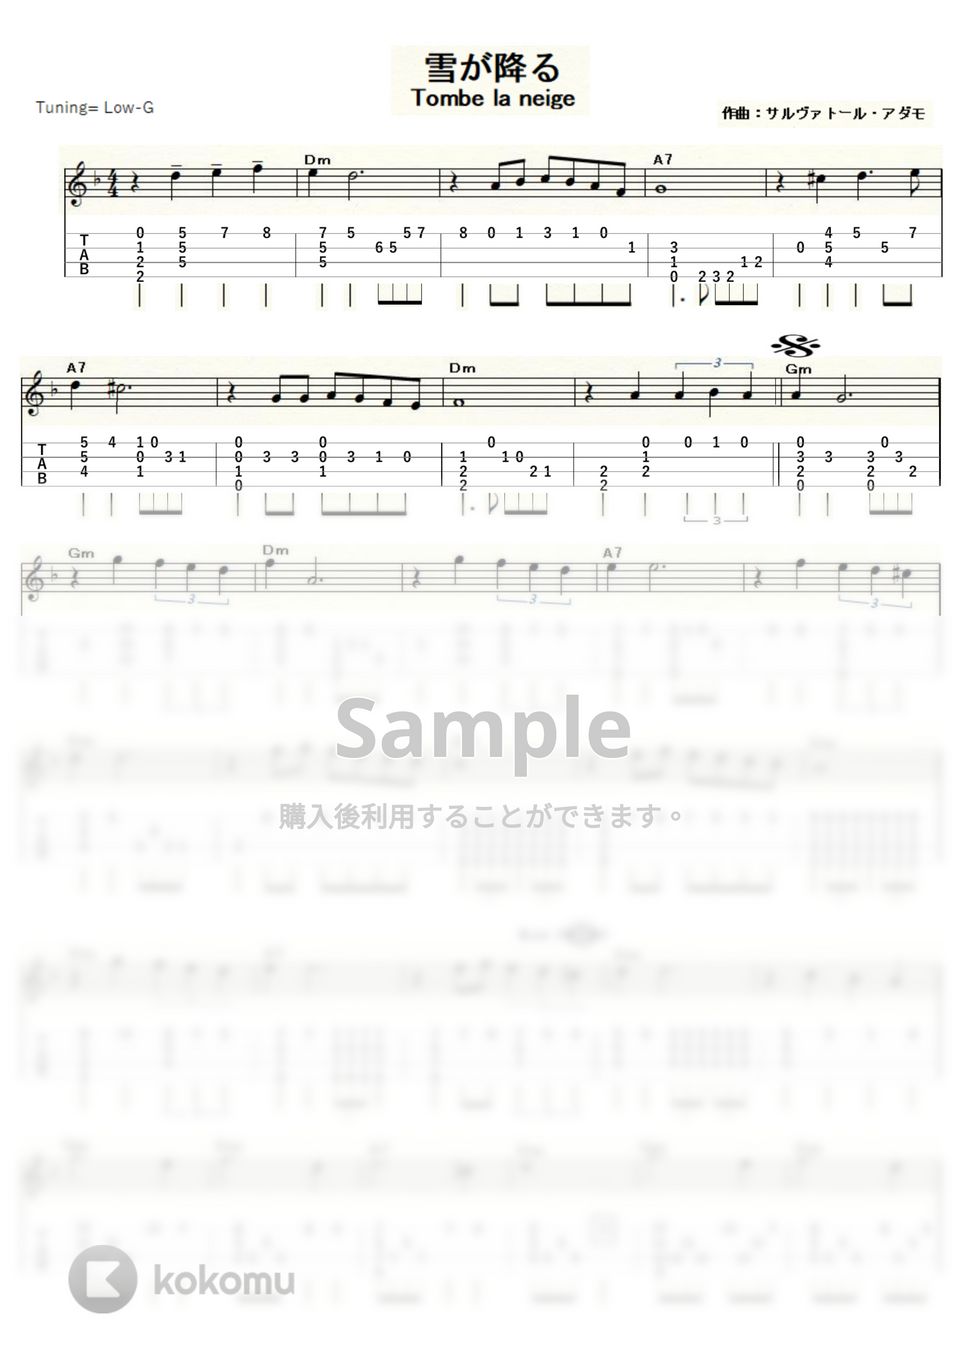 アダモ - 雪が降る (ｳｸﾚﾚｿﾛ / Low-G / 中級) by ukulelepapa